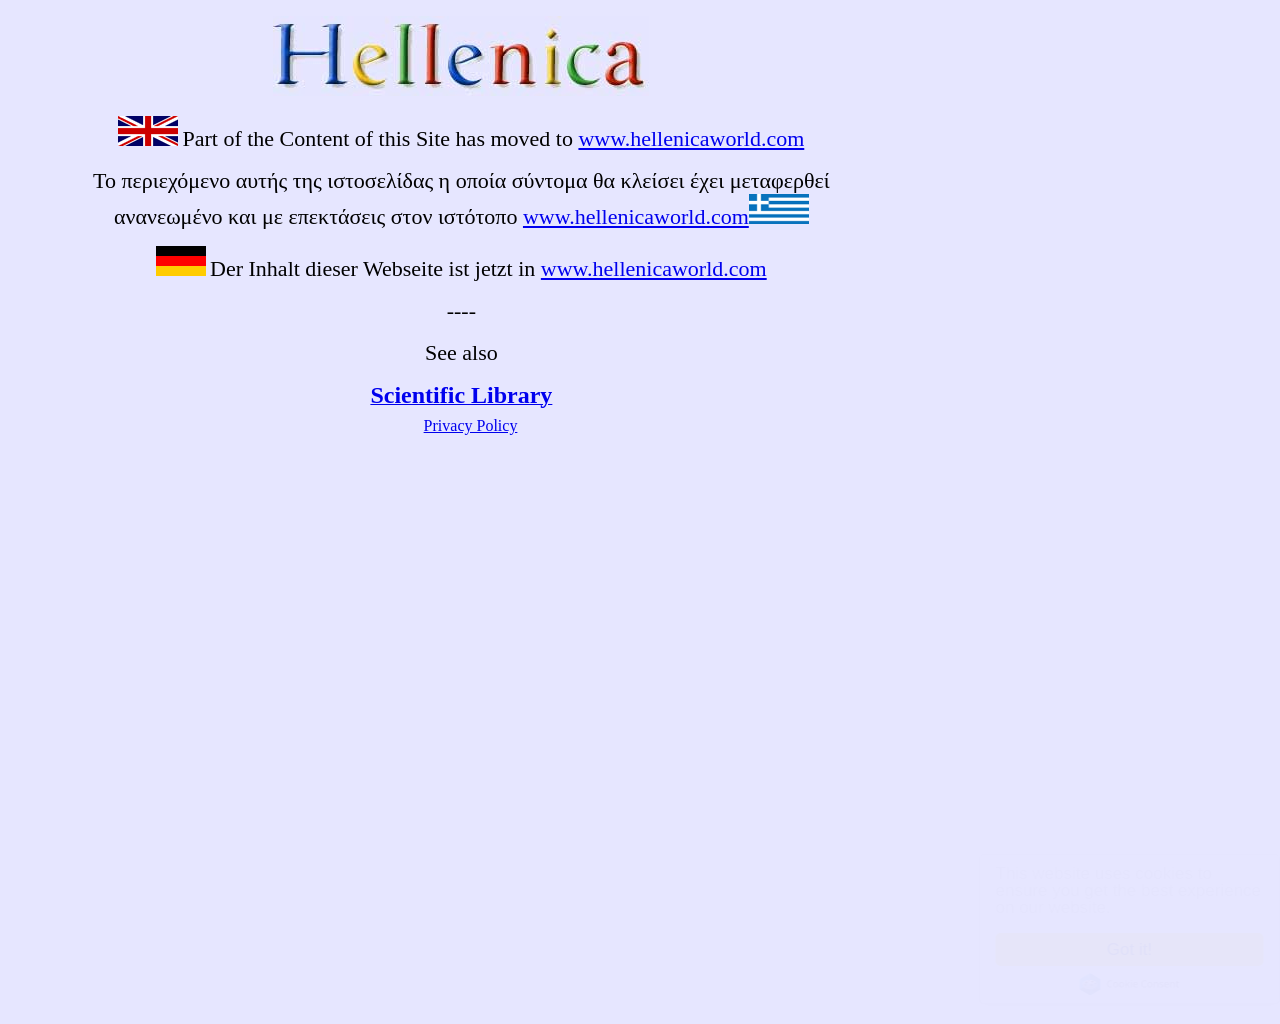 hellenica.de